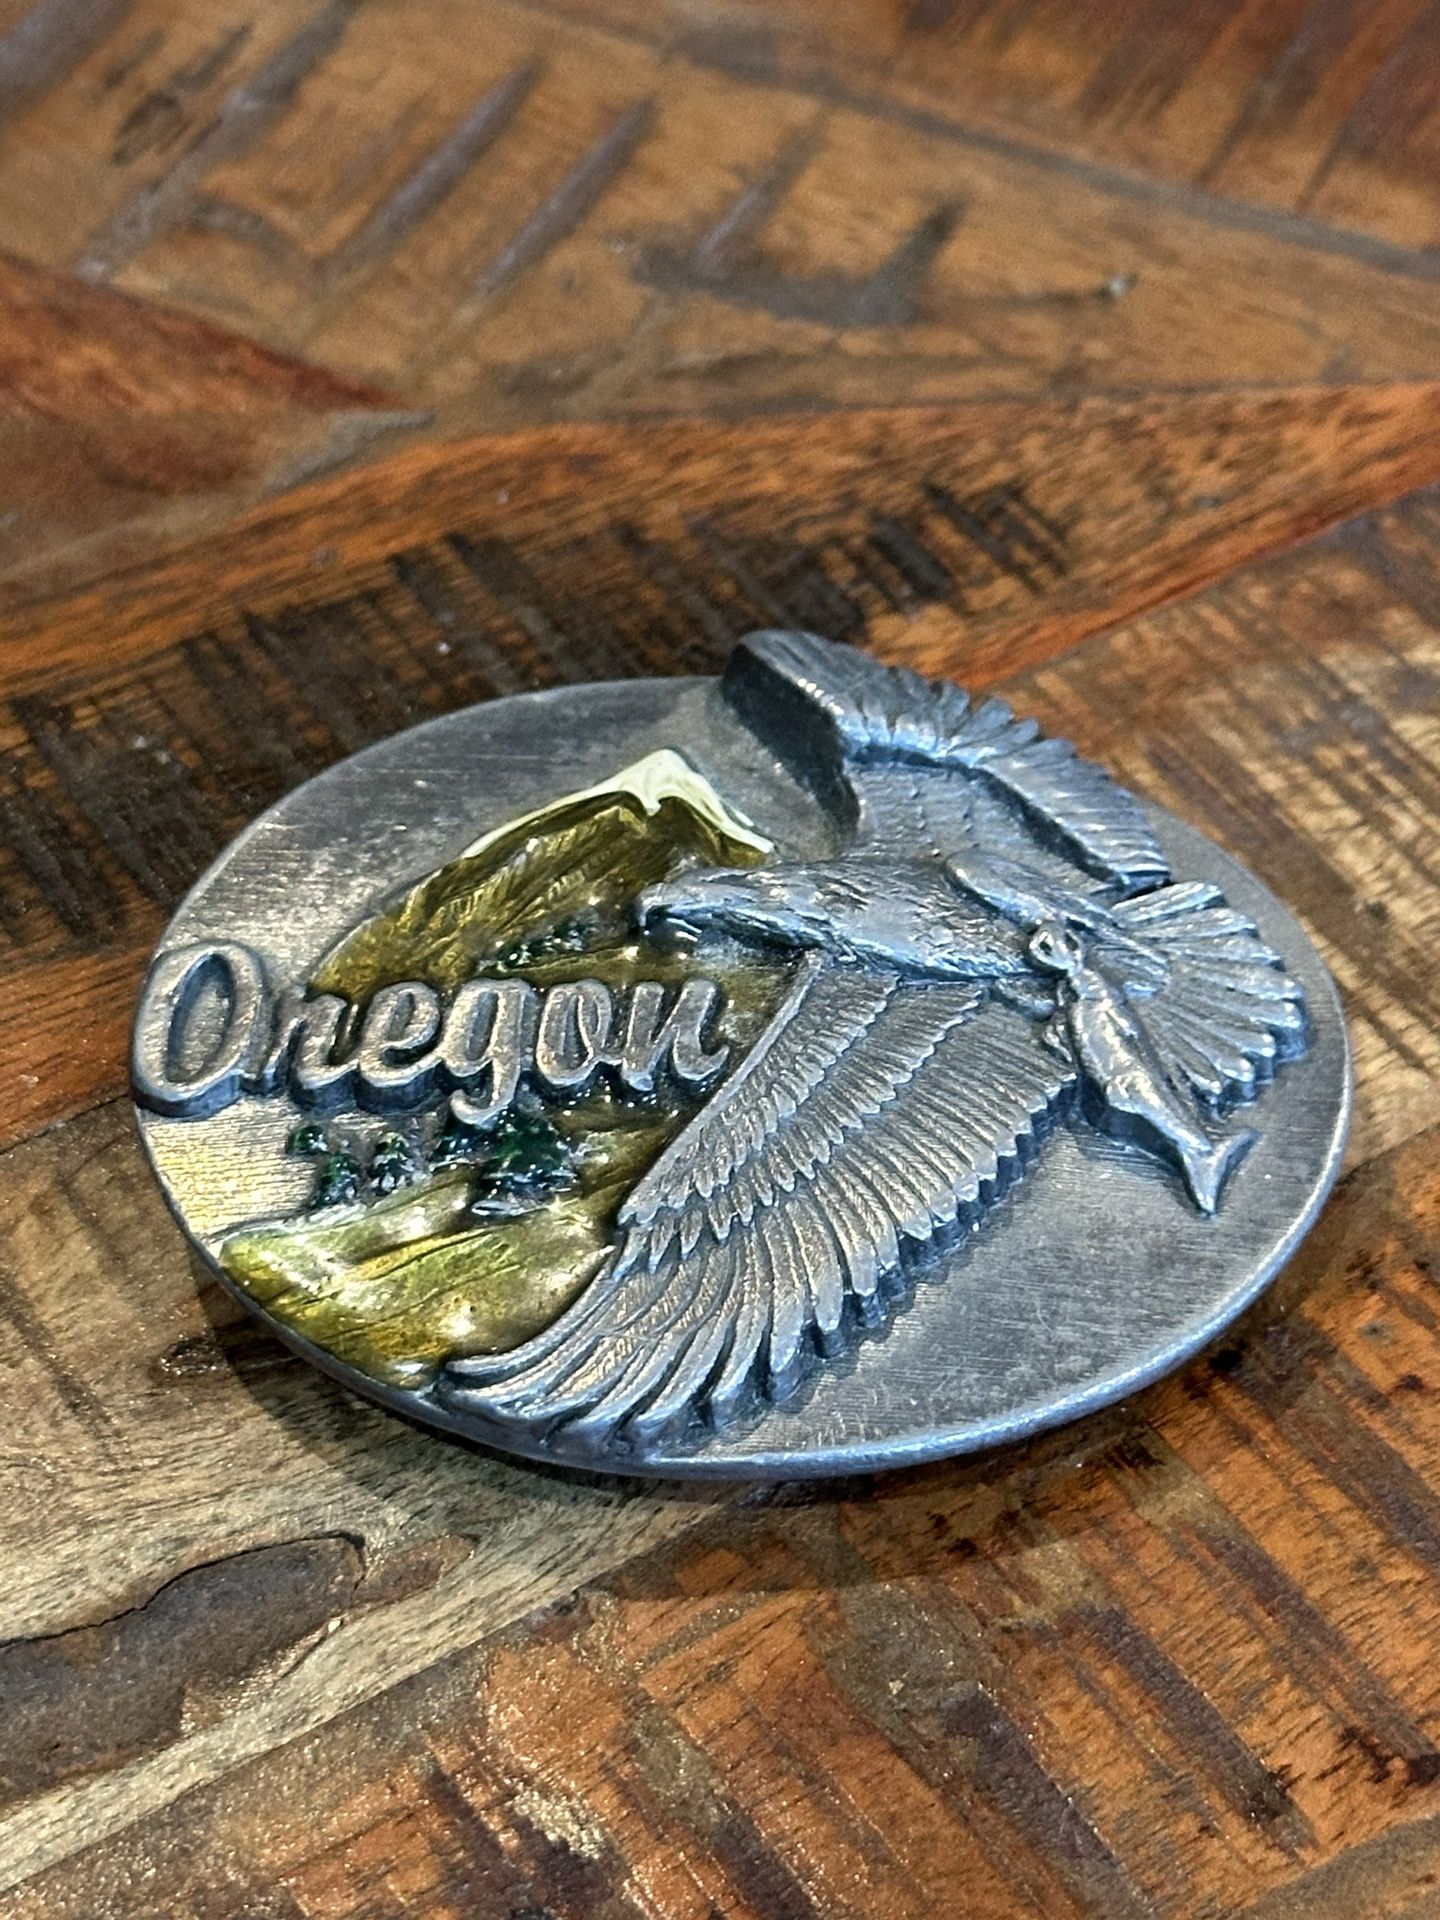 Oregon Bald Eagle 3D Siskiyou Pewter Color US Belt Buckle